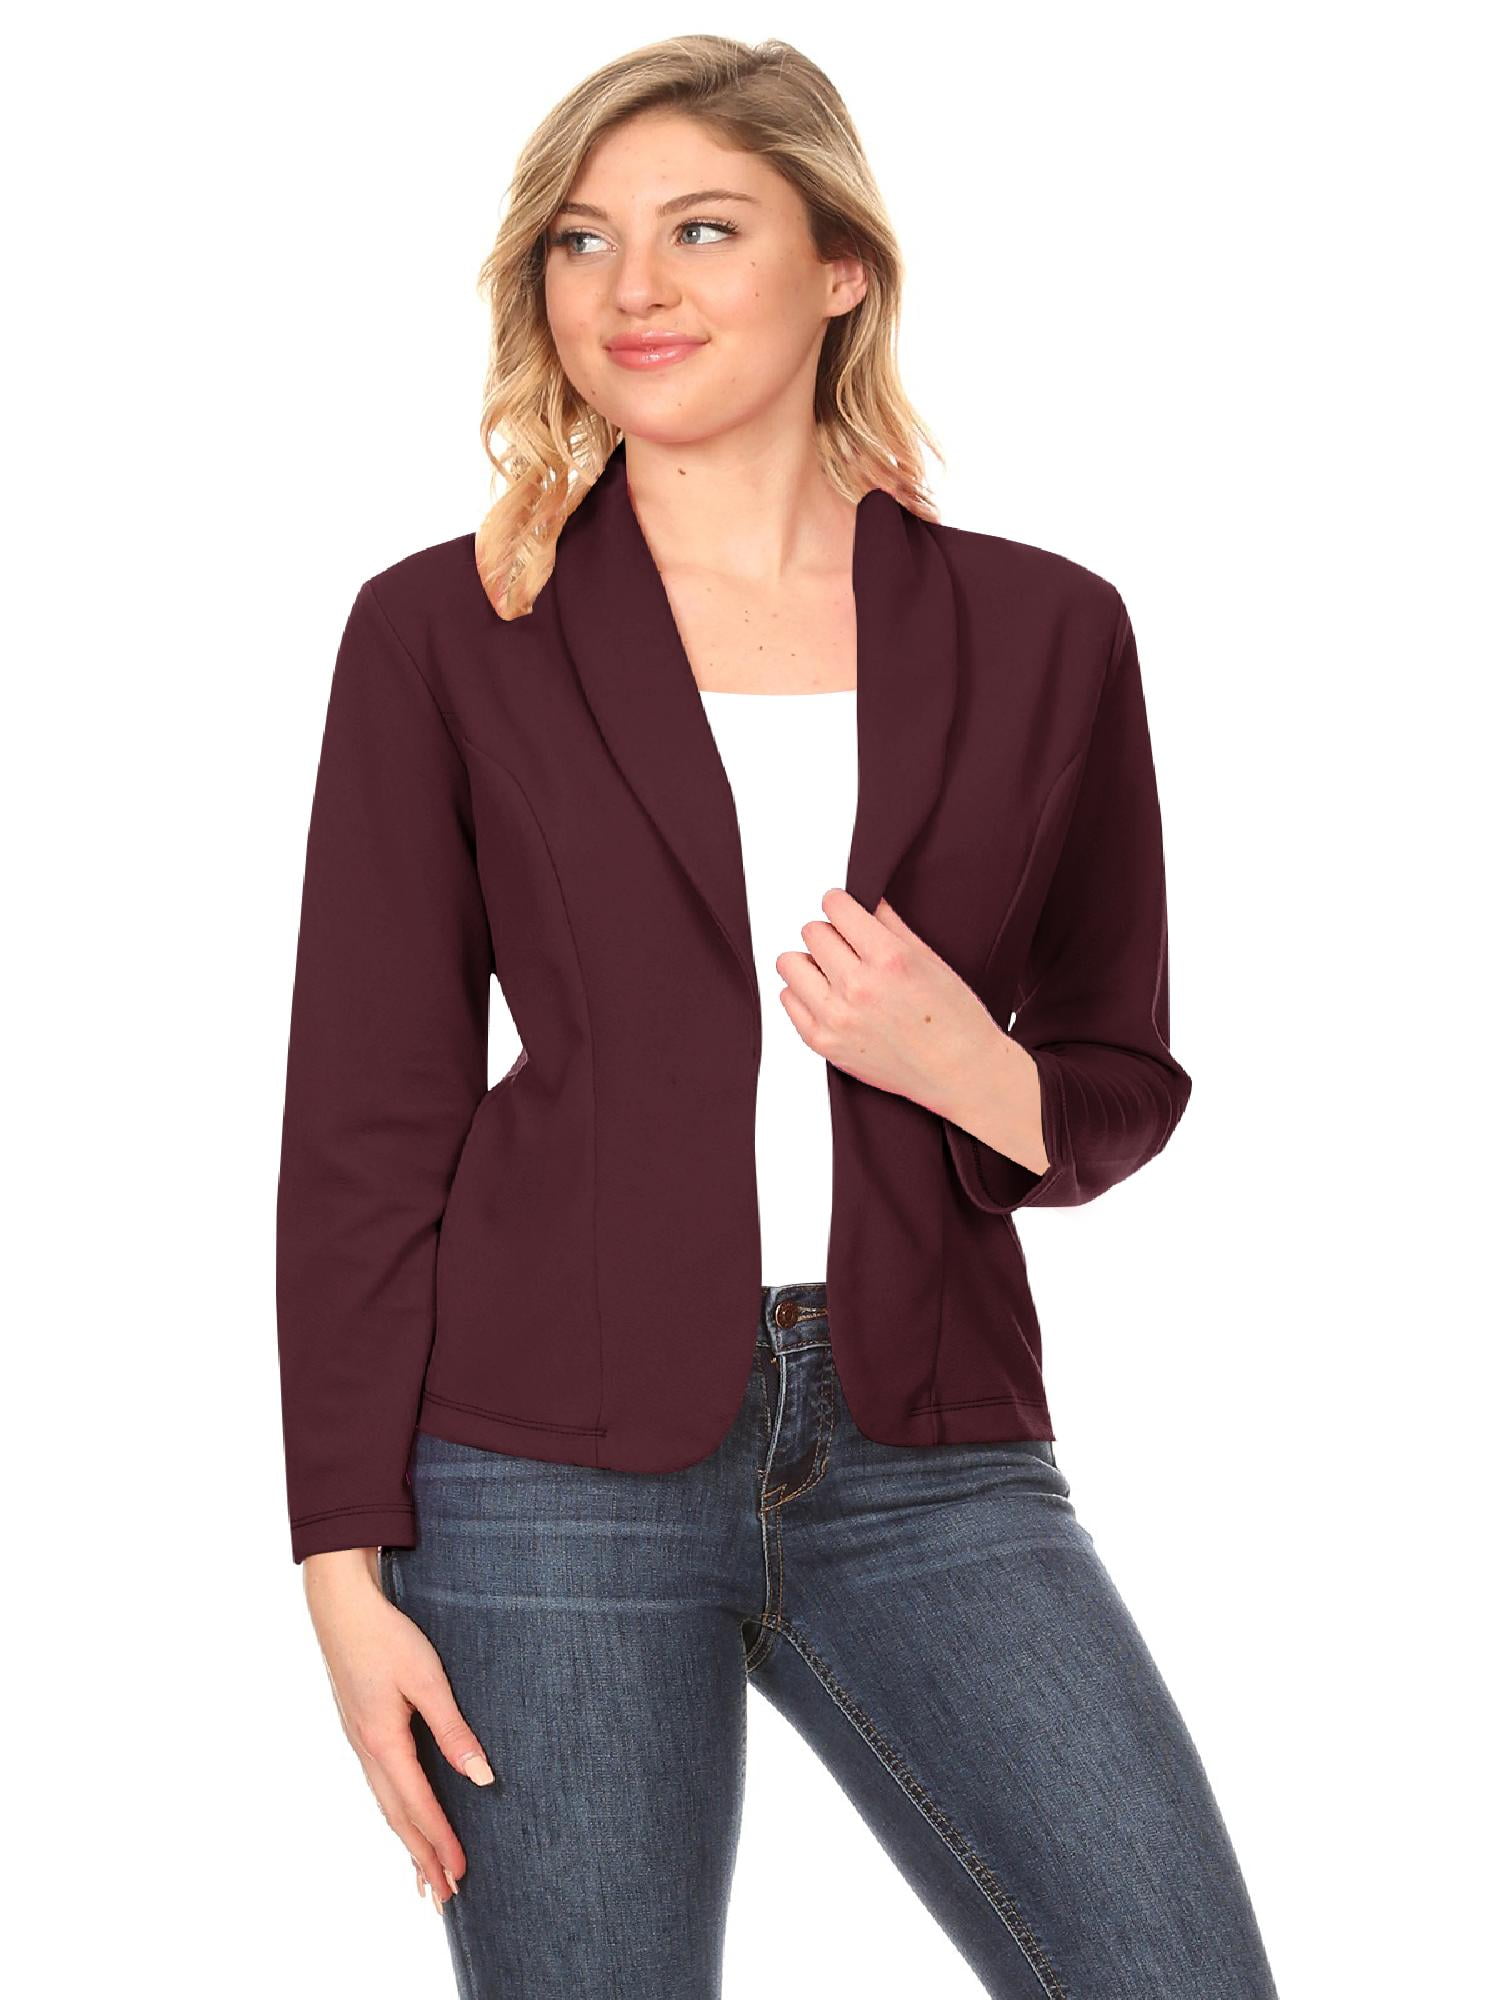 SheIn Women's Long Sleeve Open Front Casual Work Office Solid Blazer Jacket 